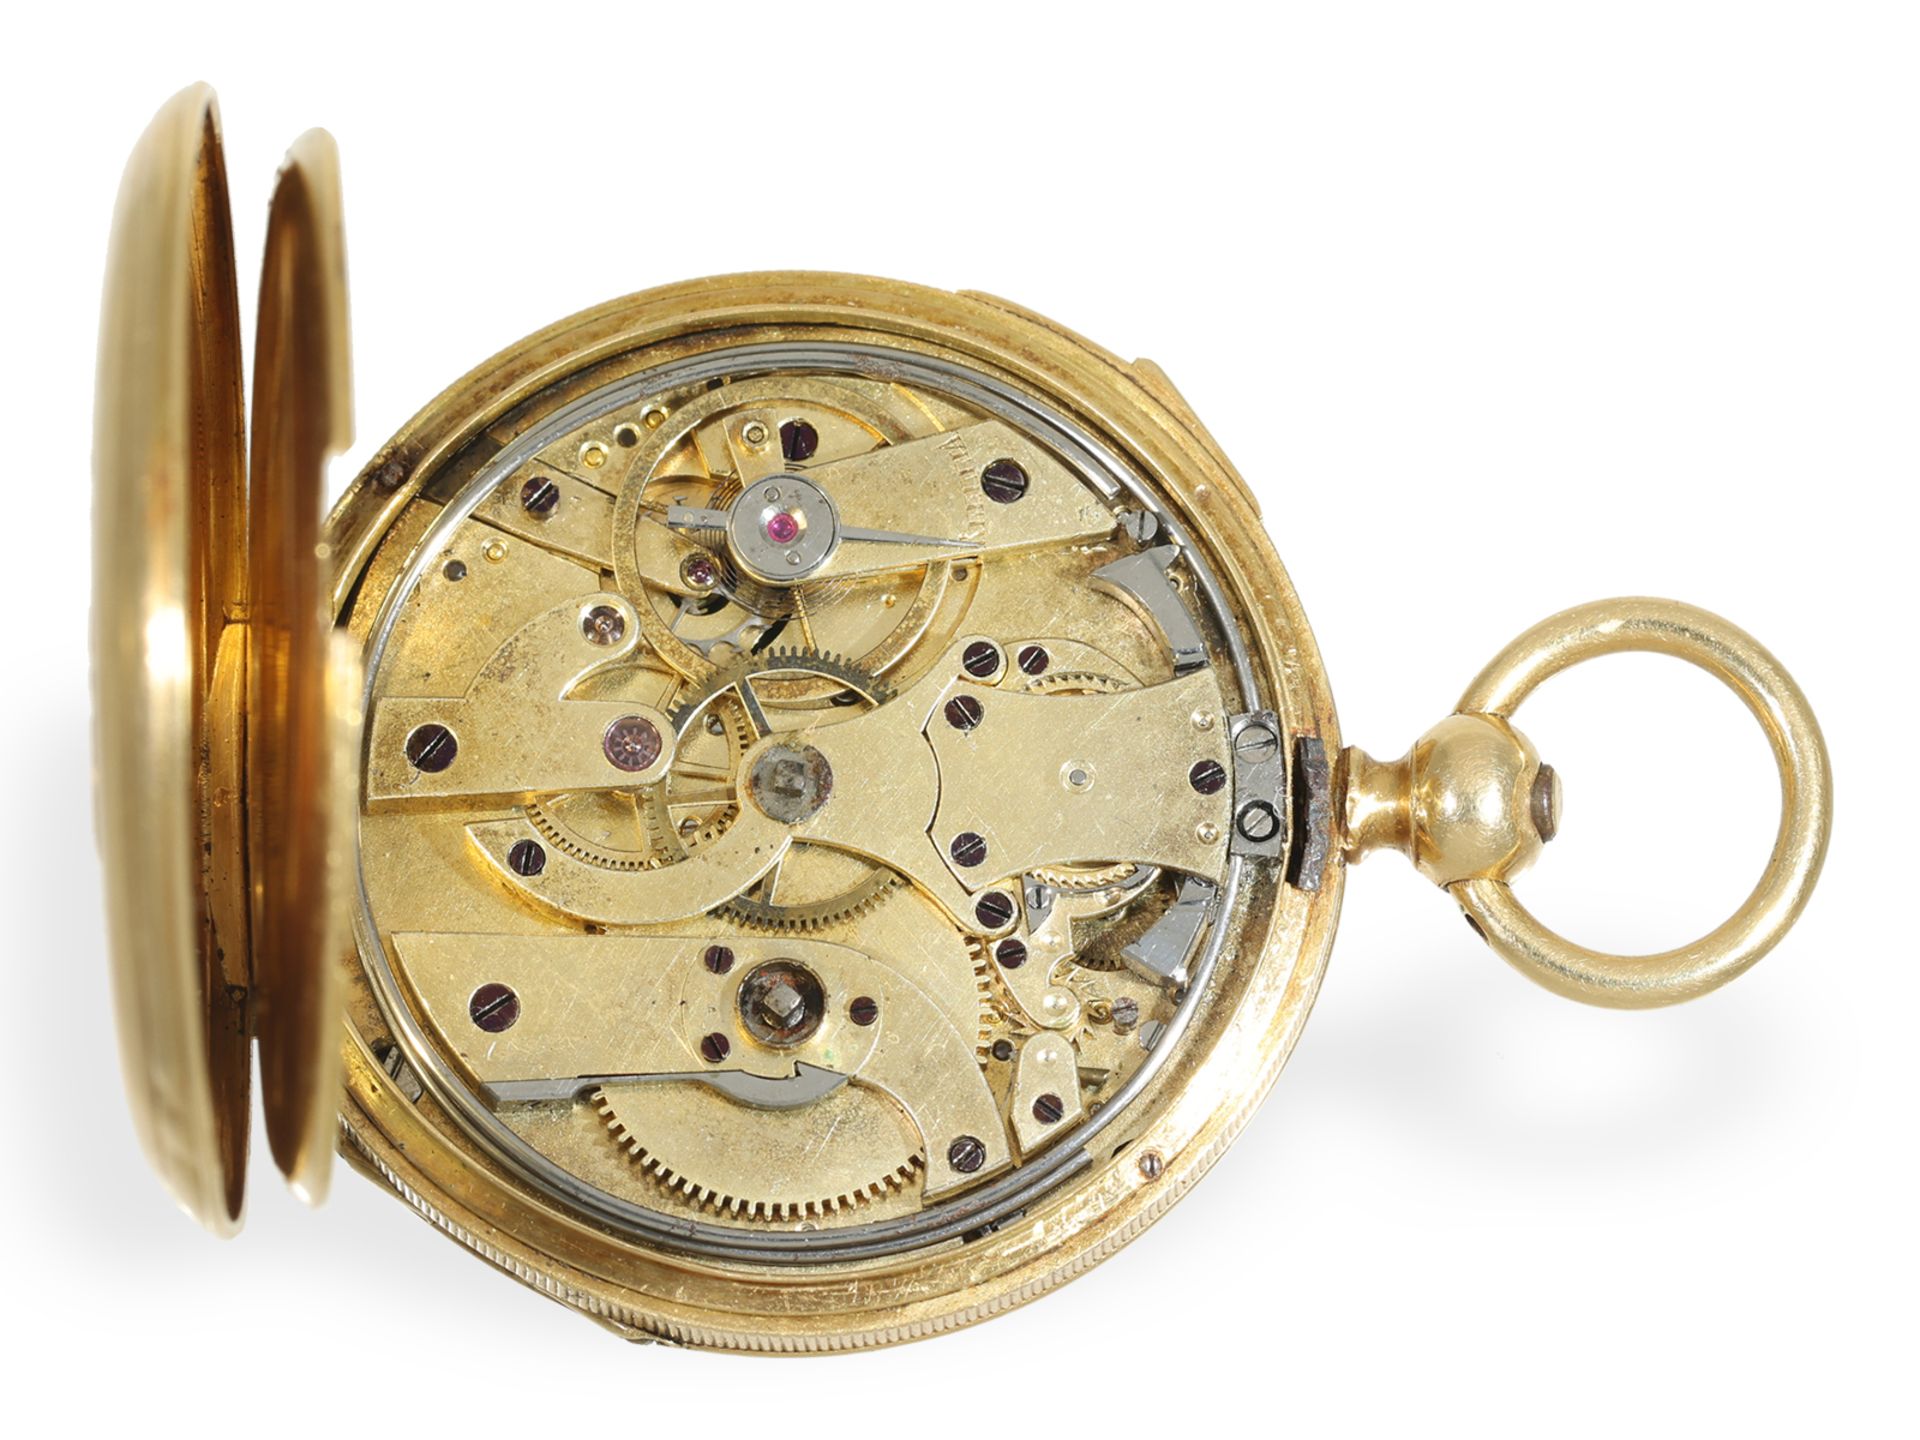 Taschenuhr: sehr seltene Damentaschenuhr mit Repetition, Jeannot Droz a Besancon ca. 1850 - Bild 4 aus 7